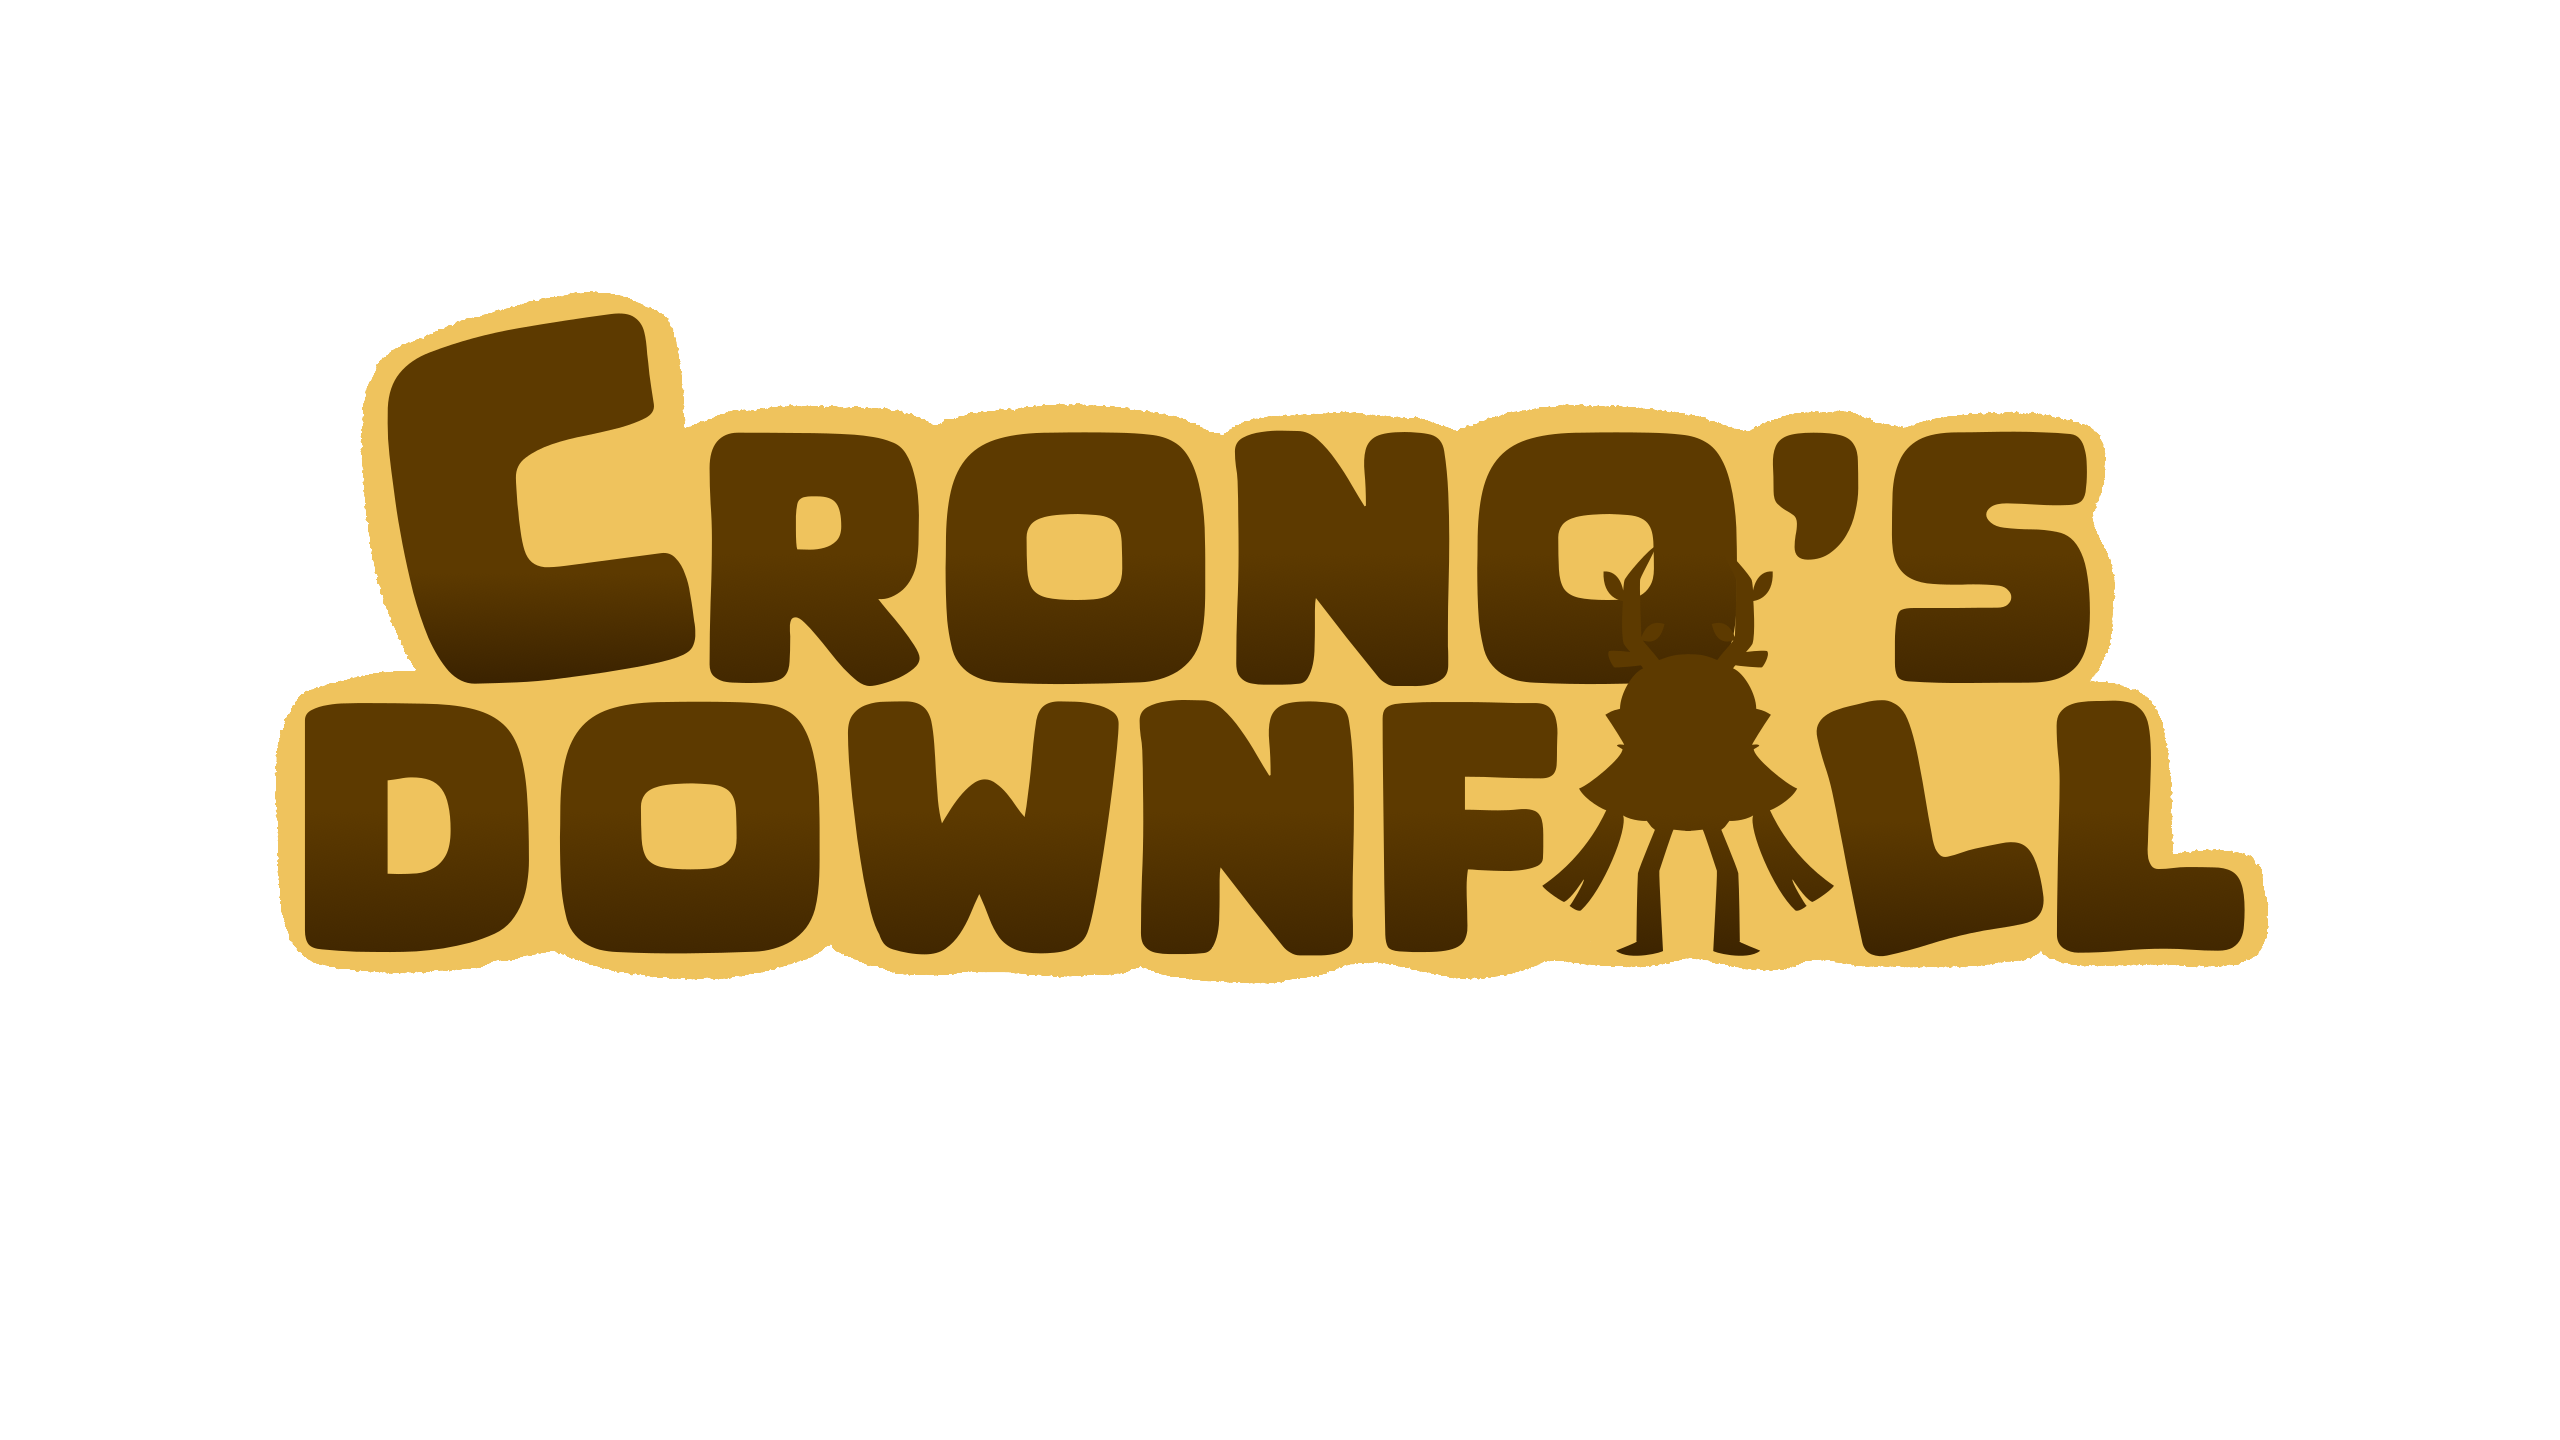 Cronos'  DownFall